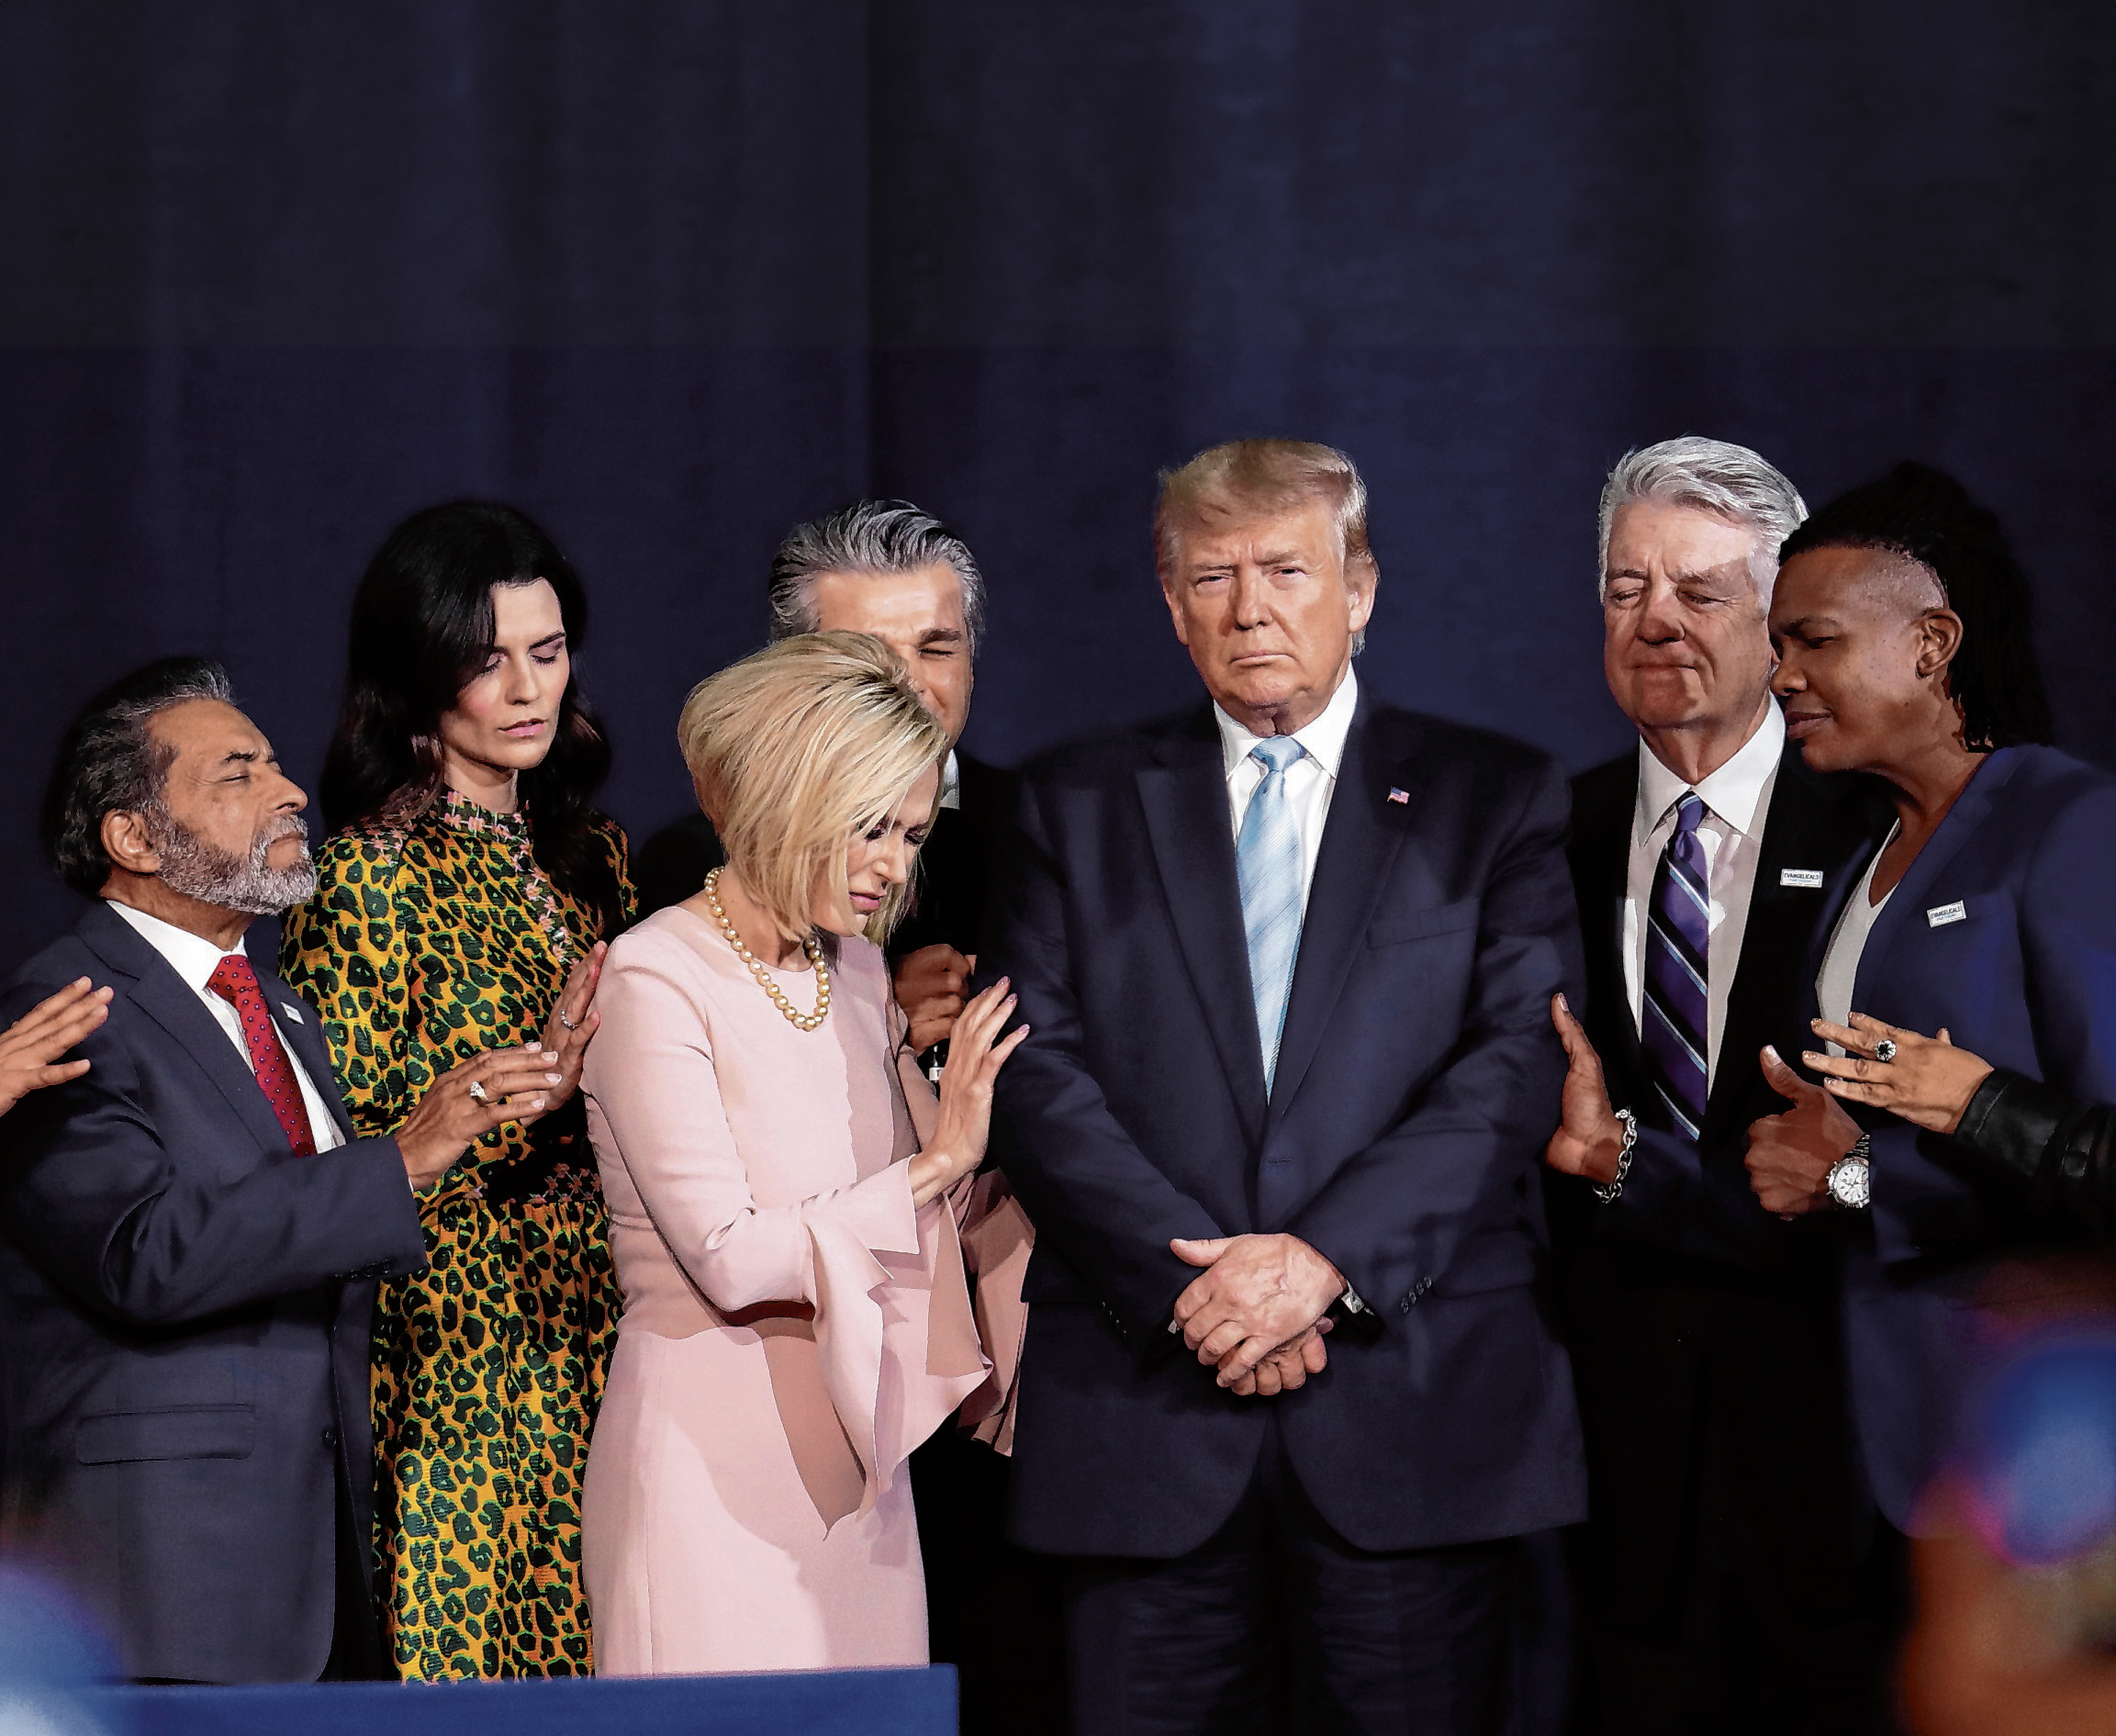 Sie feiern ihn wie eine Heilsfigur: Trump bei einem Gebet evangelikaler Christen.